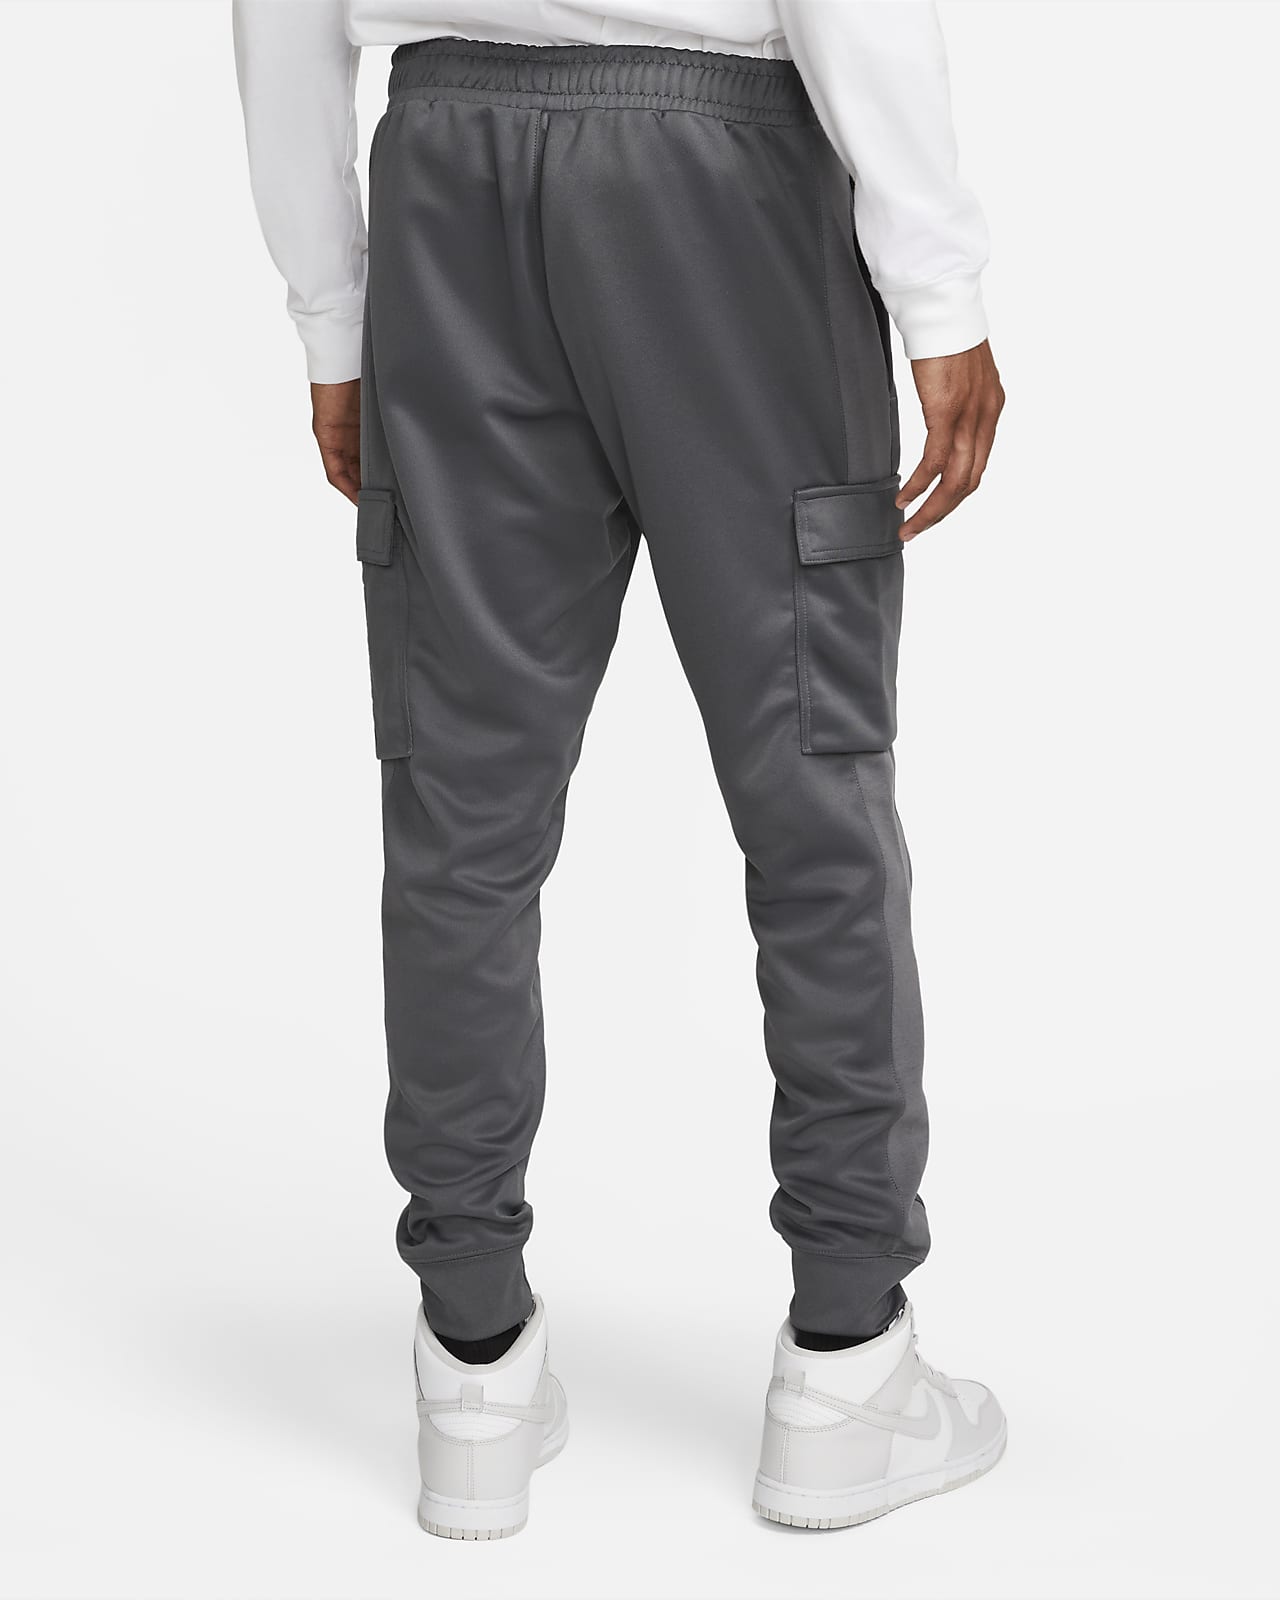 Pantalon Nike Sportswear Trend pour homme. Nike LU